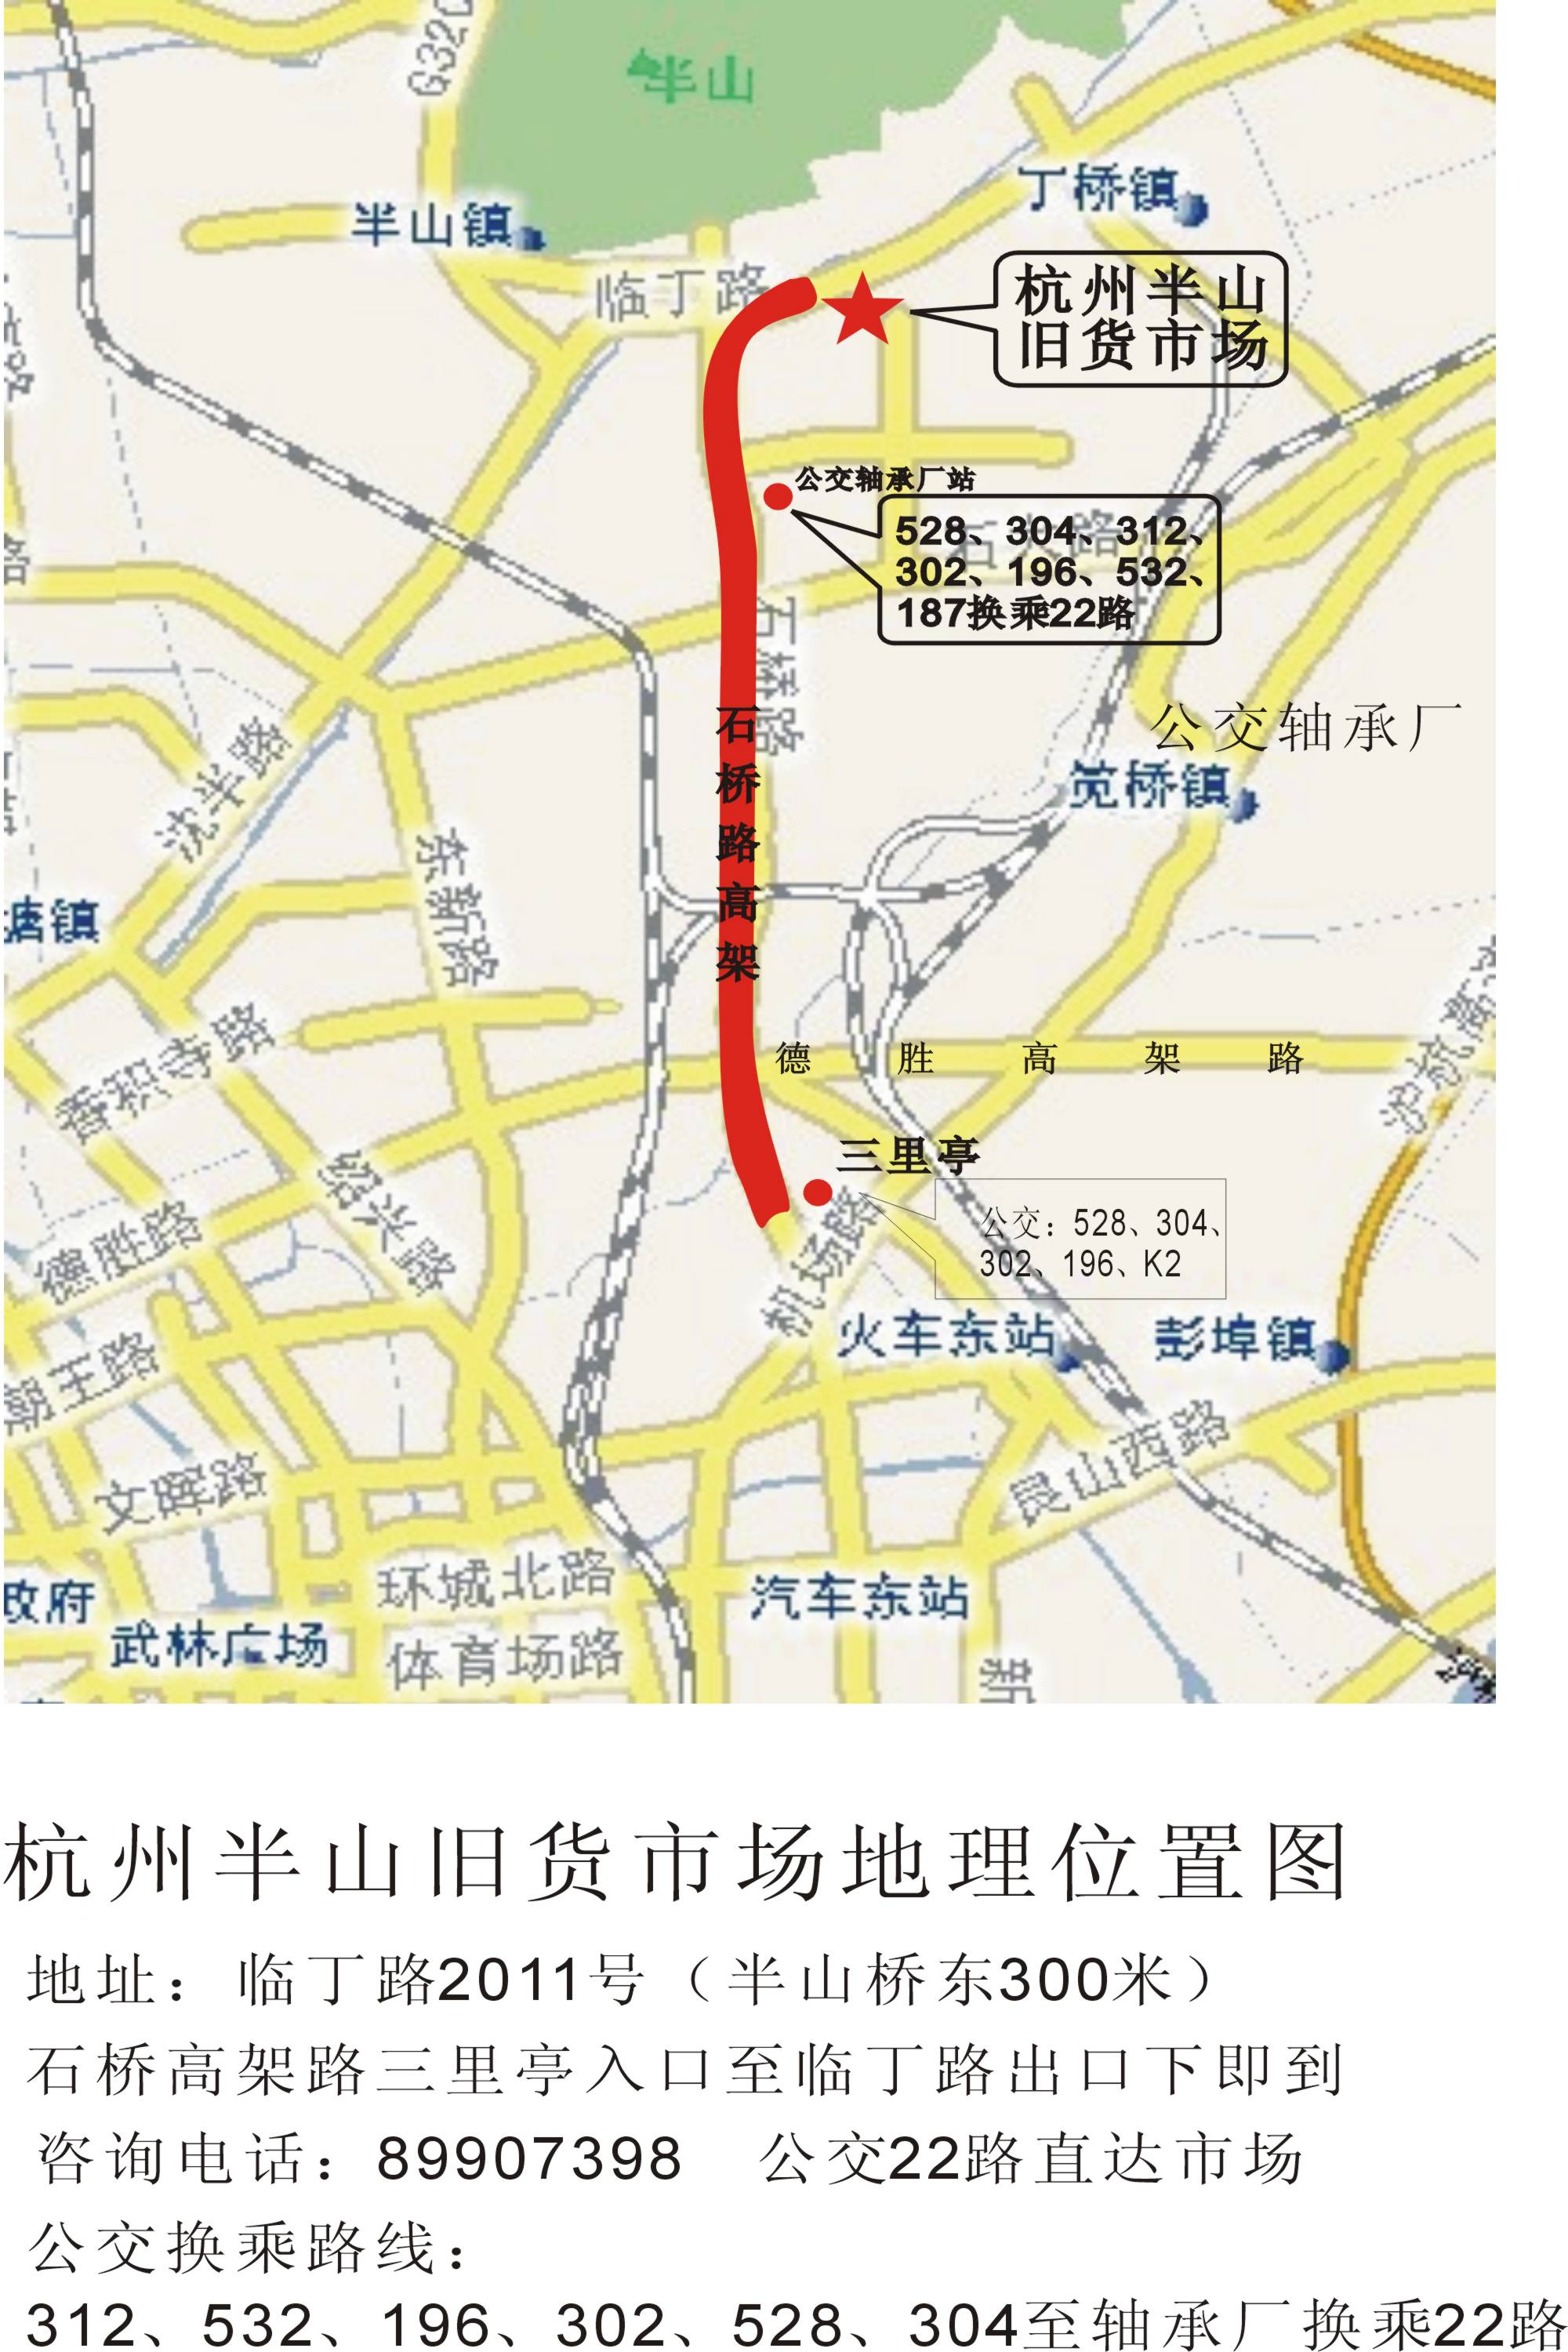 杭州半山舊貨市場地理位置圖